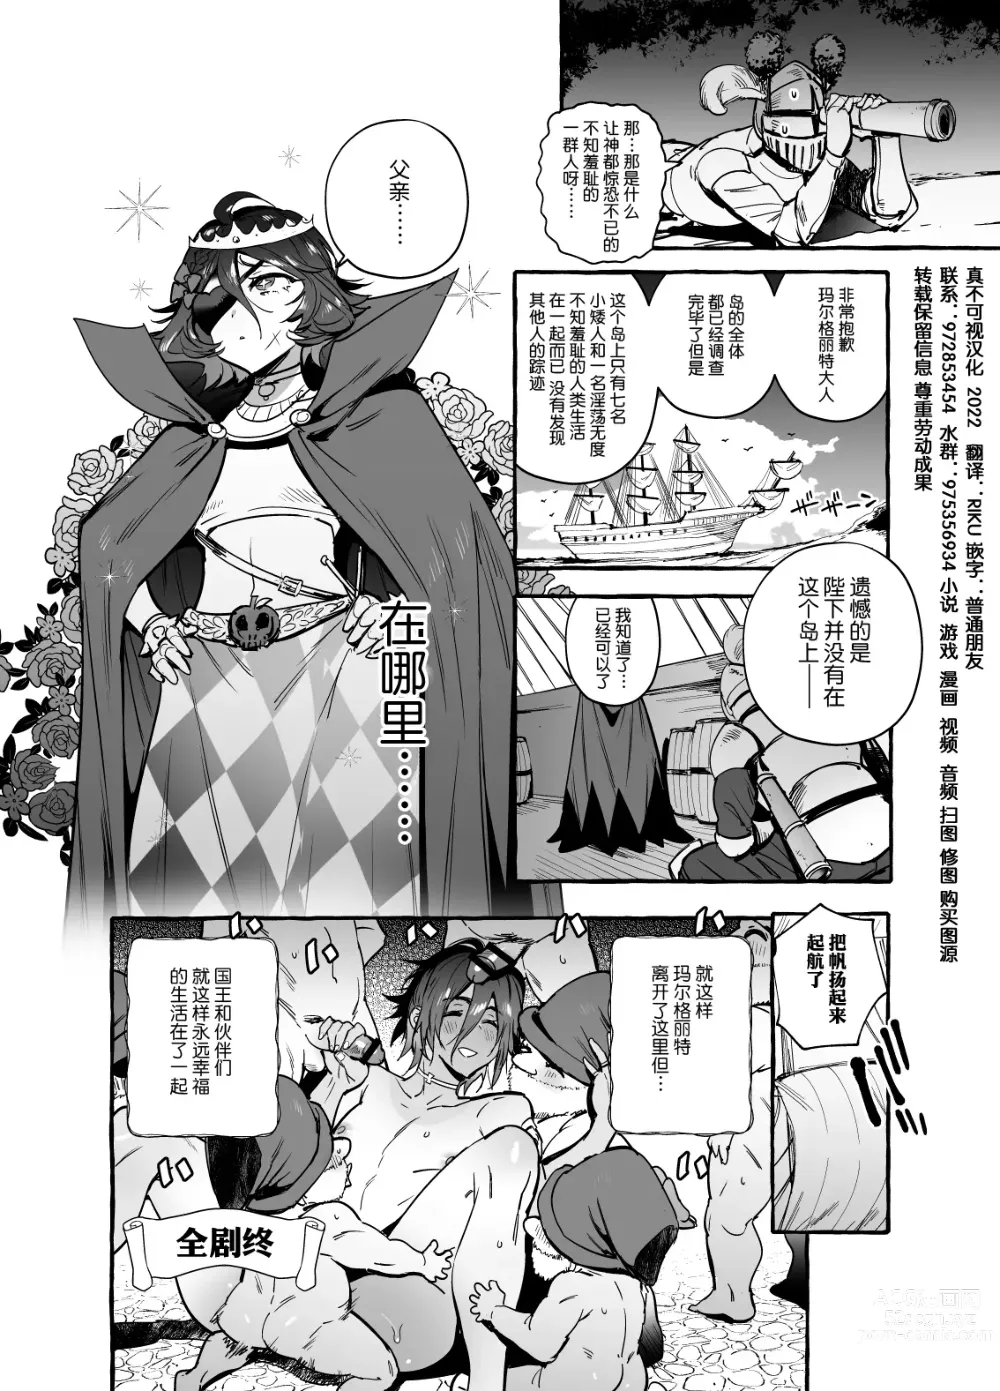 Page 40 of doujinshi Shirayuki Ou to Shichinin no Yaro-domo